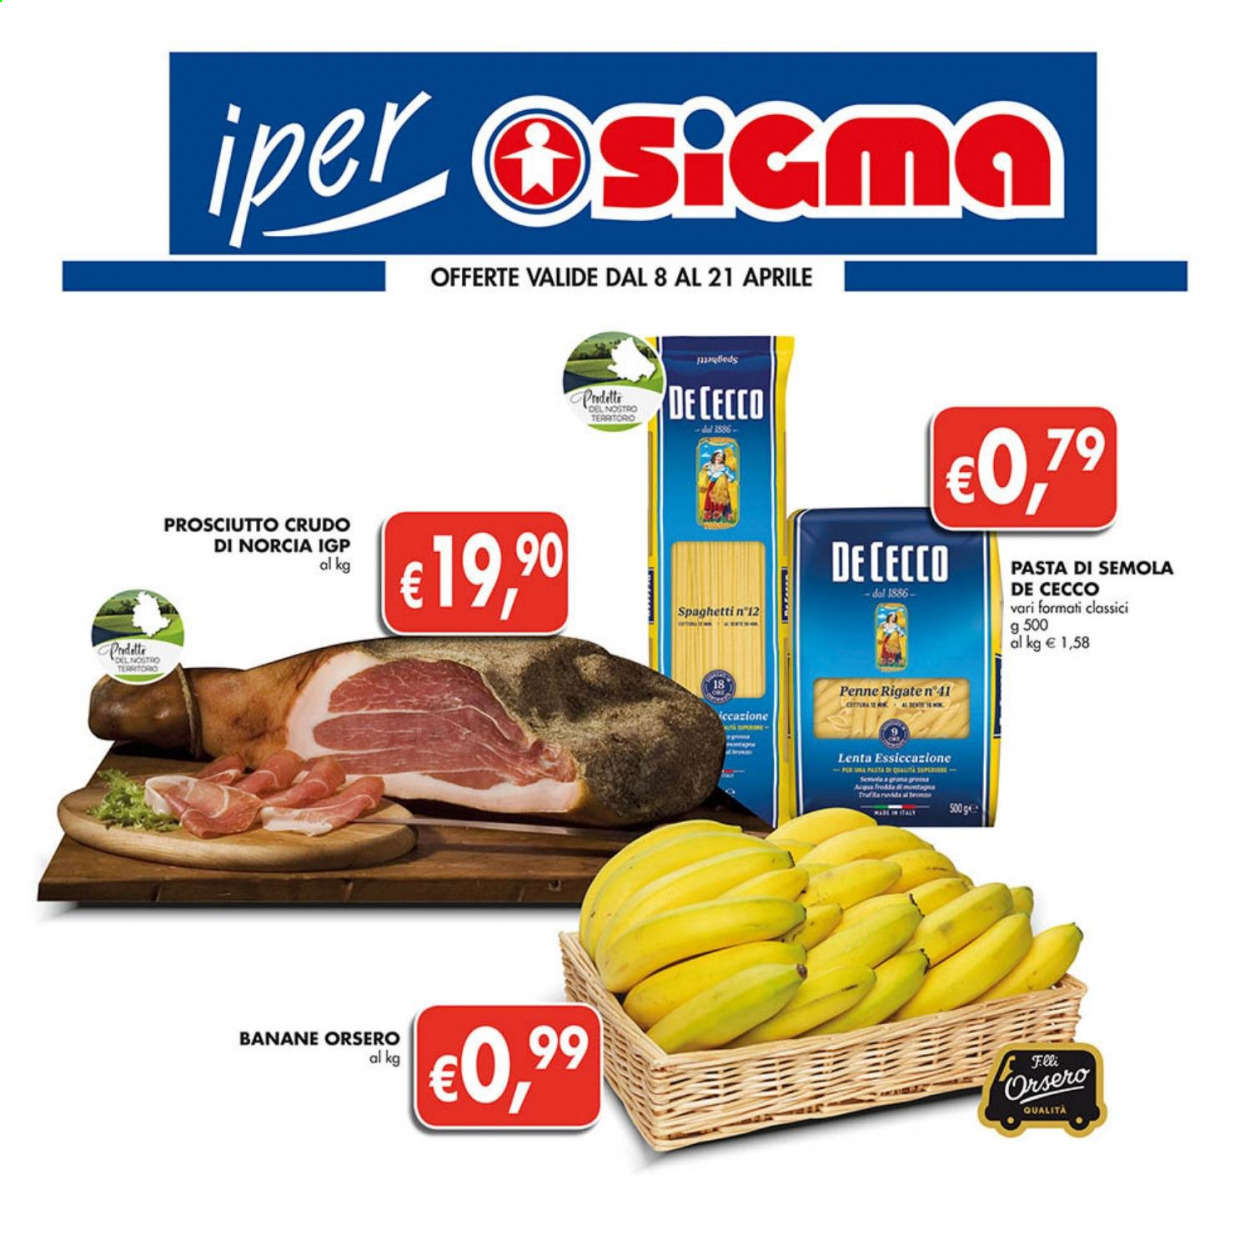 thumbnail - Volantino Sigma - 8/4/2021 - 21/4/2021 - Prodotti in offerta - banane, prosciutto, prosciutto crudo, De Cecco, spaghetti, pasta, penne. Pagina 1.